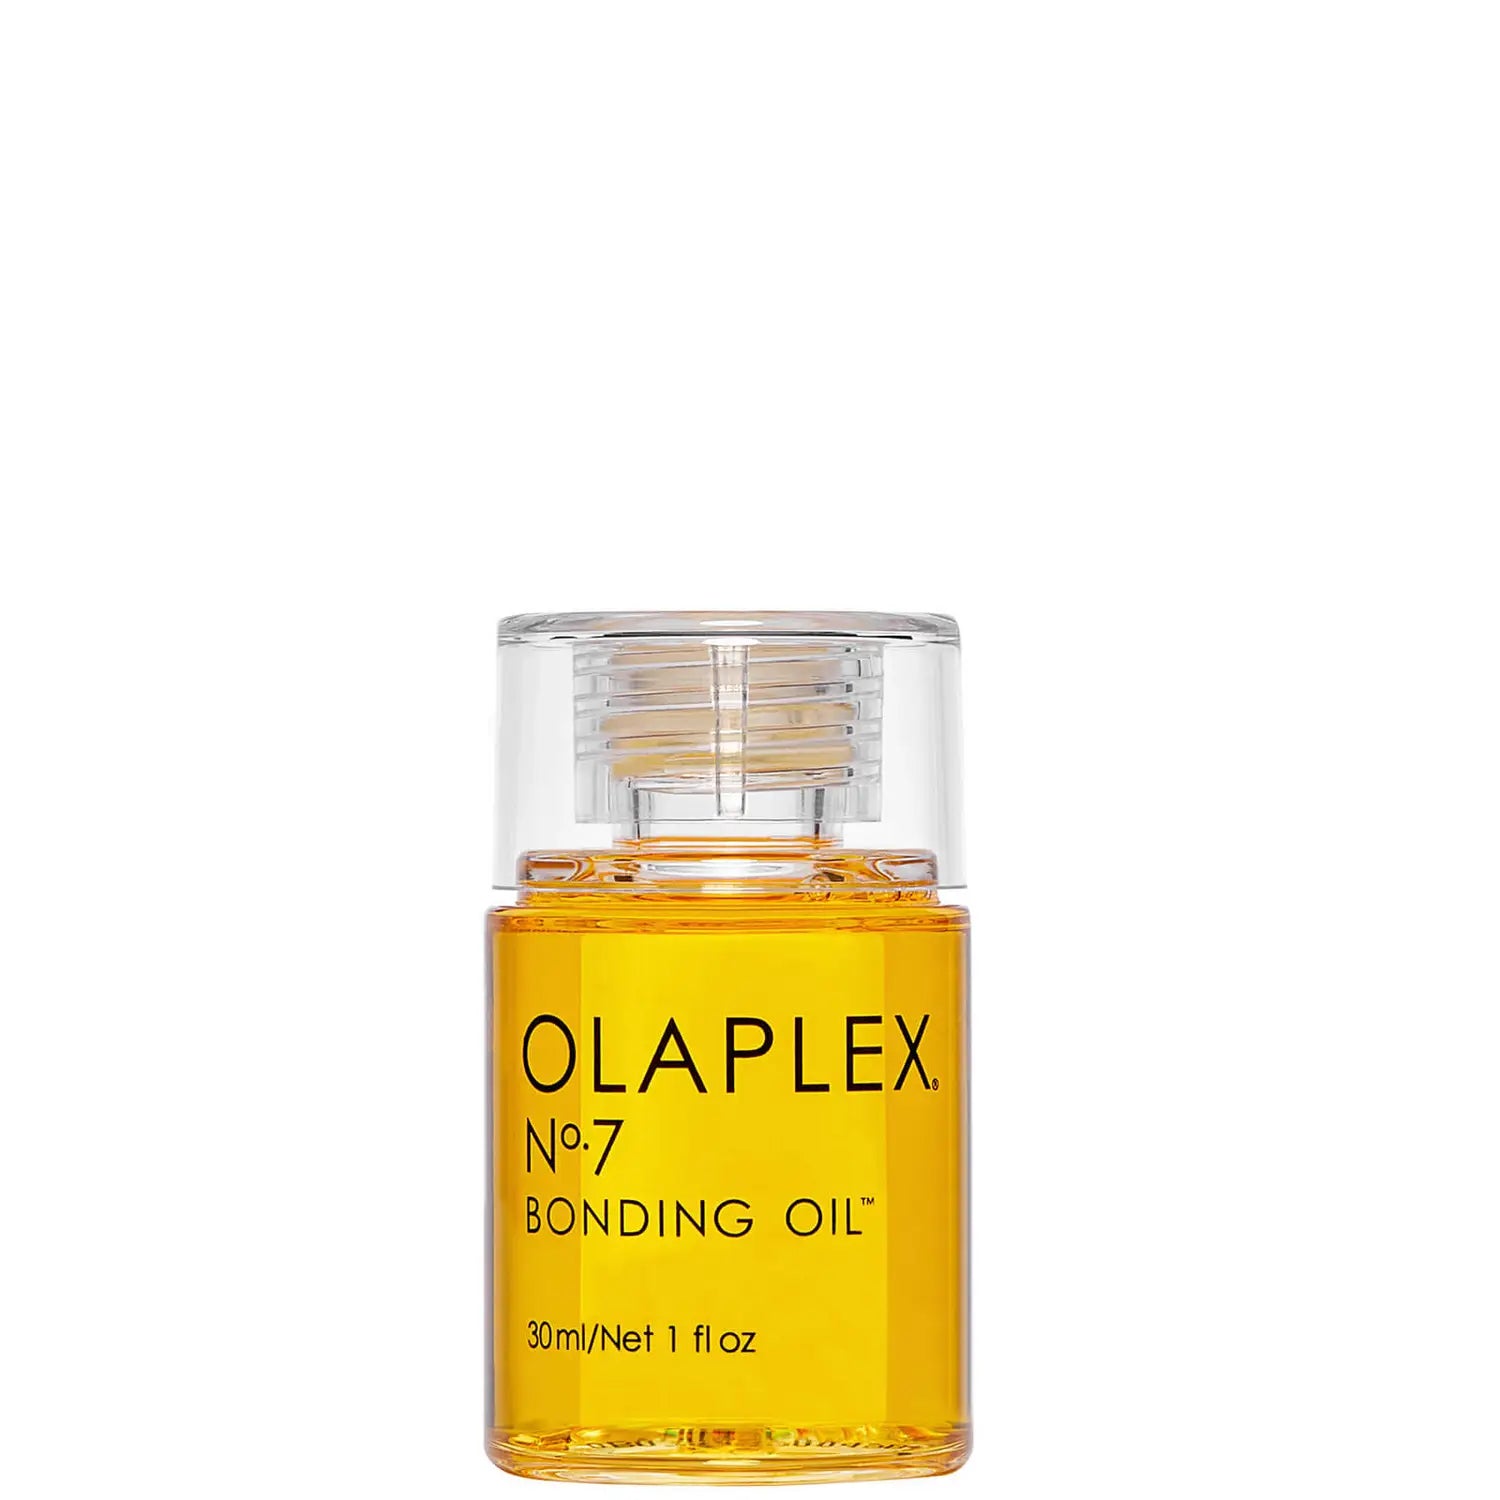 OLAPLEX No. 7 Bonding Oil hair oil 30ml | N°7 Bonding Oil hair oil 30ml